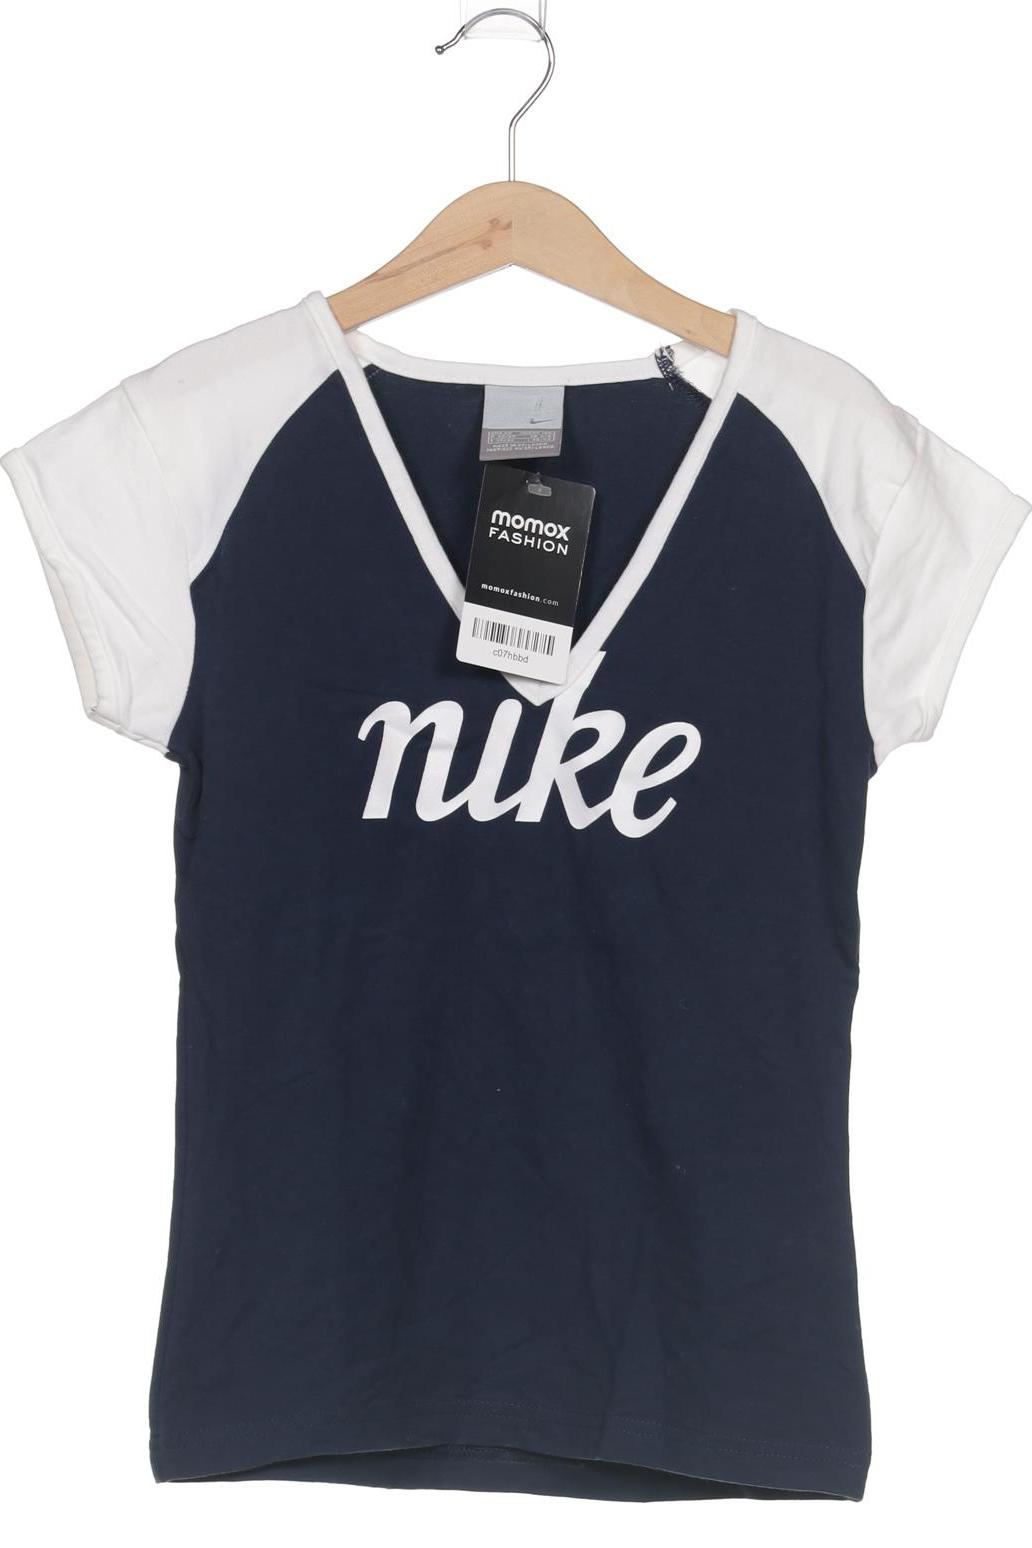 Nike Damen T-Shirt, marineblau, Gr. 122 von Nike